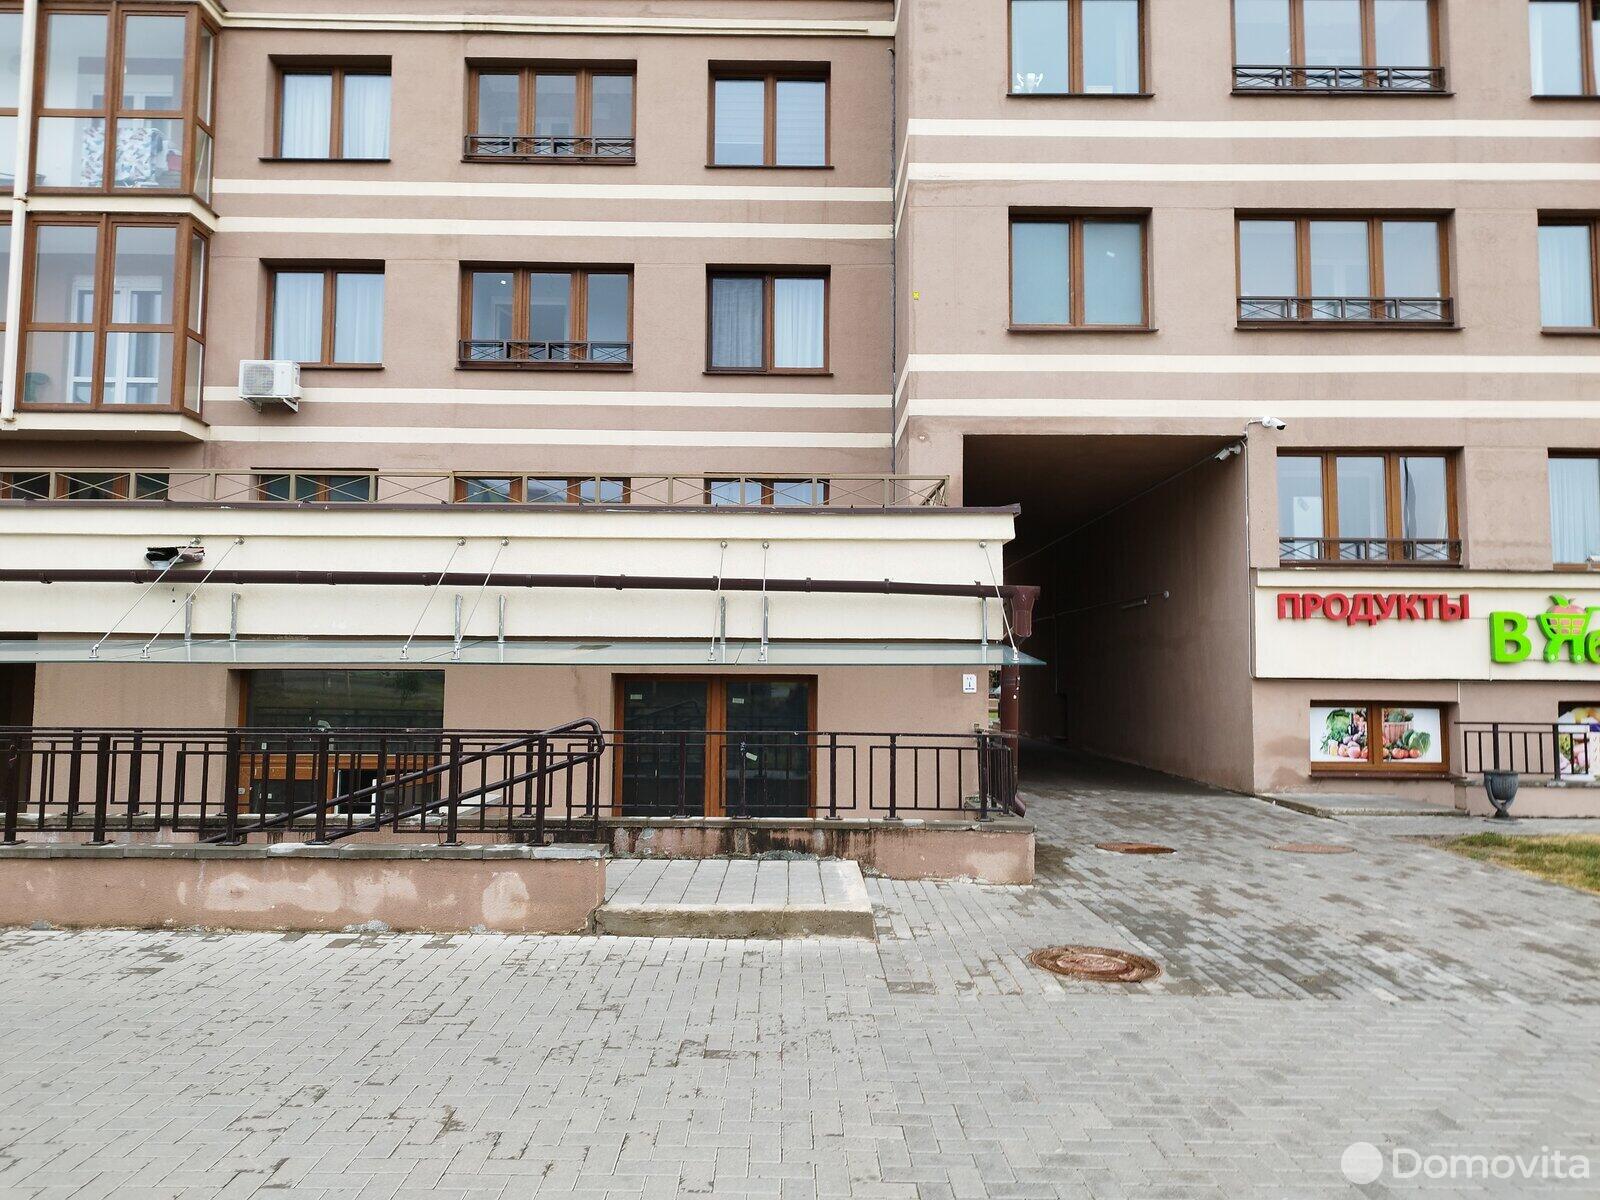 Снять торговую точку на ул. Макаенка, д. 12/Б в Минске, 3452BYN, код 964641 - фото 1